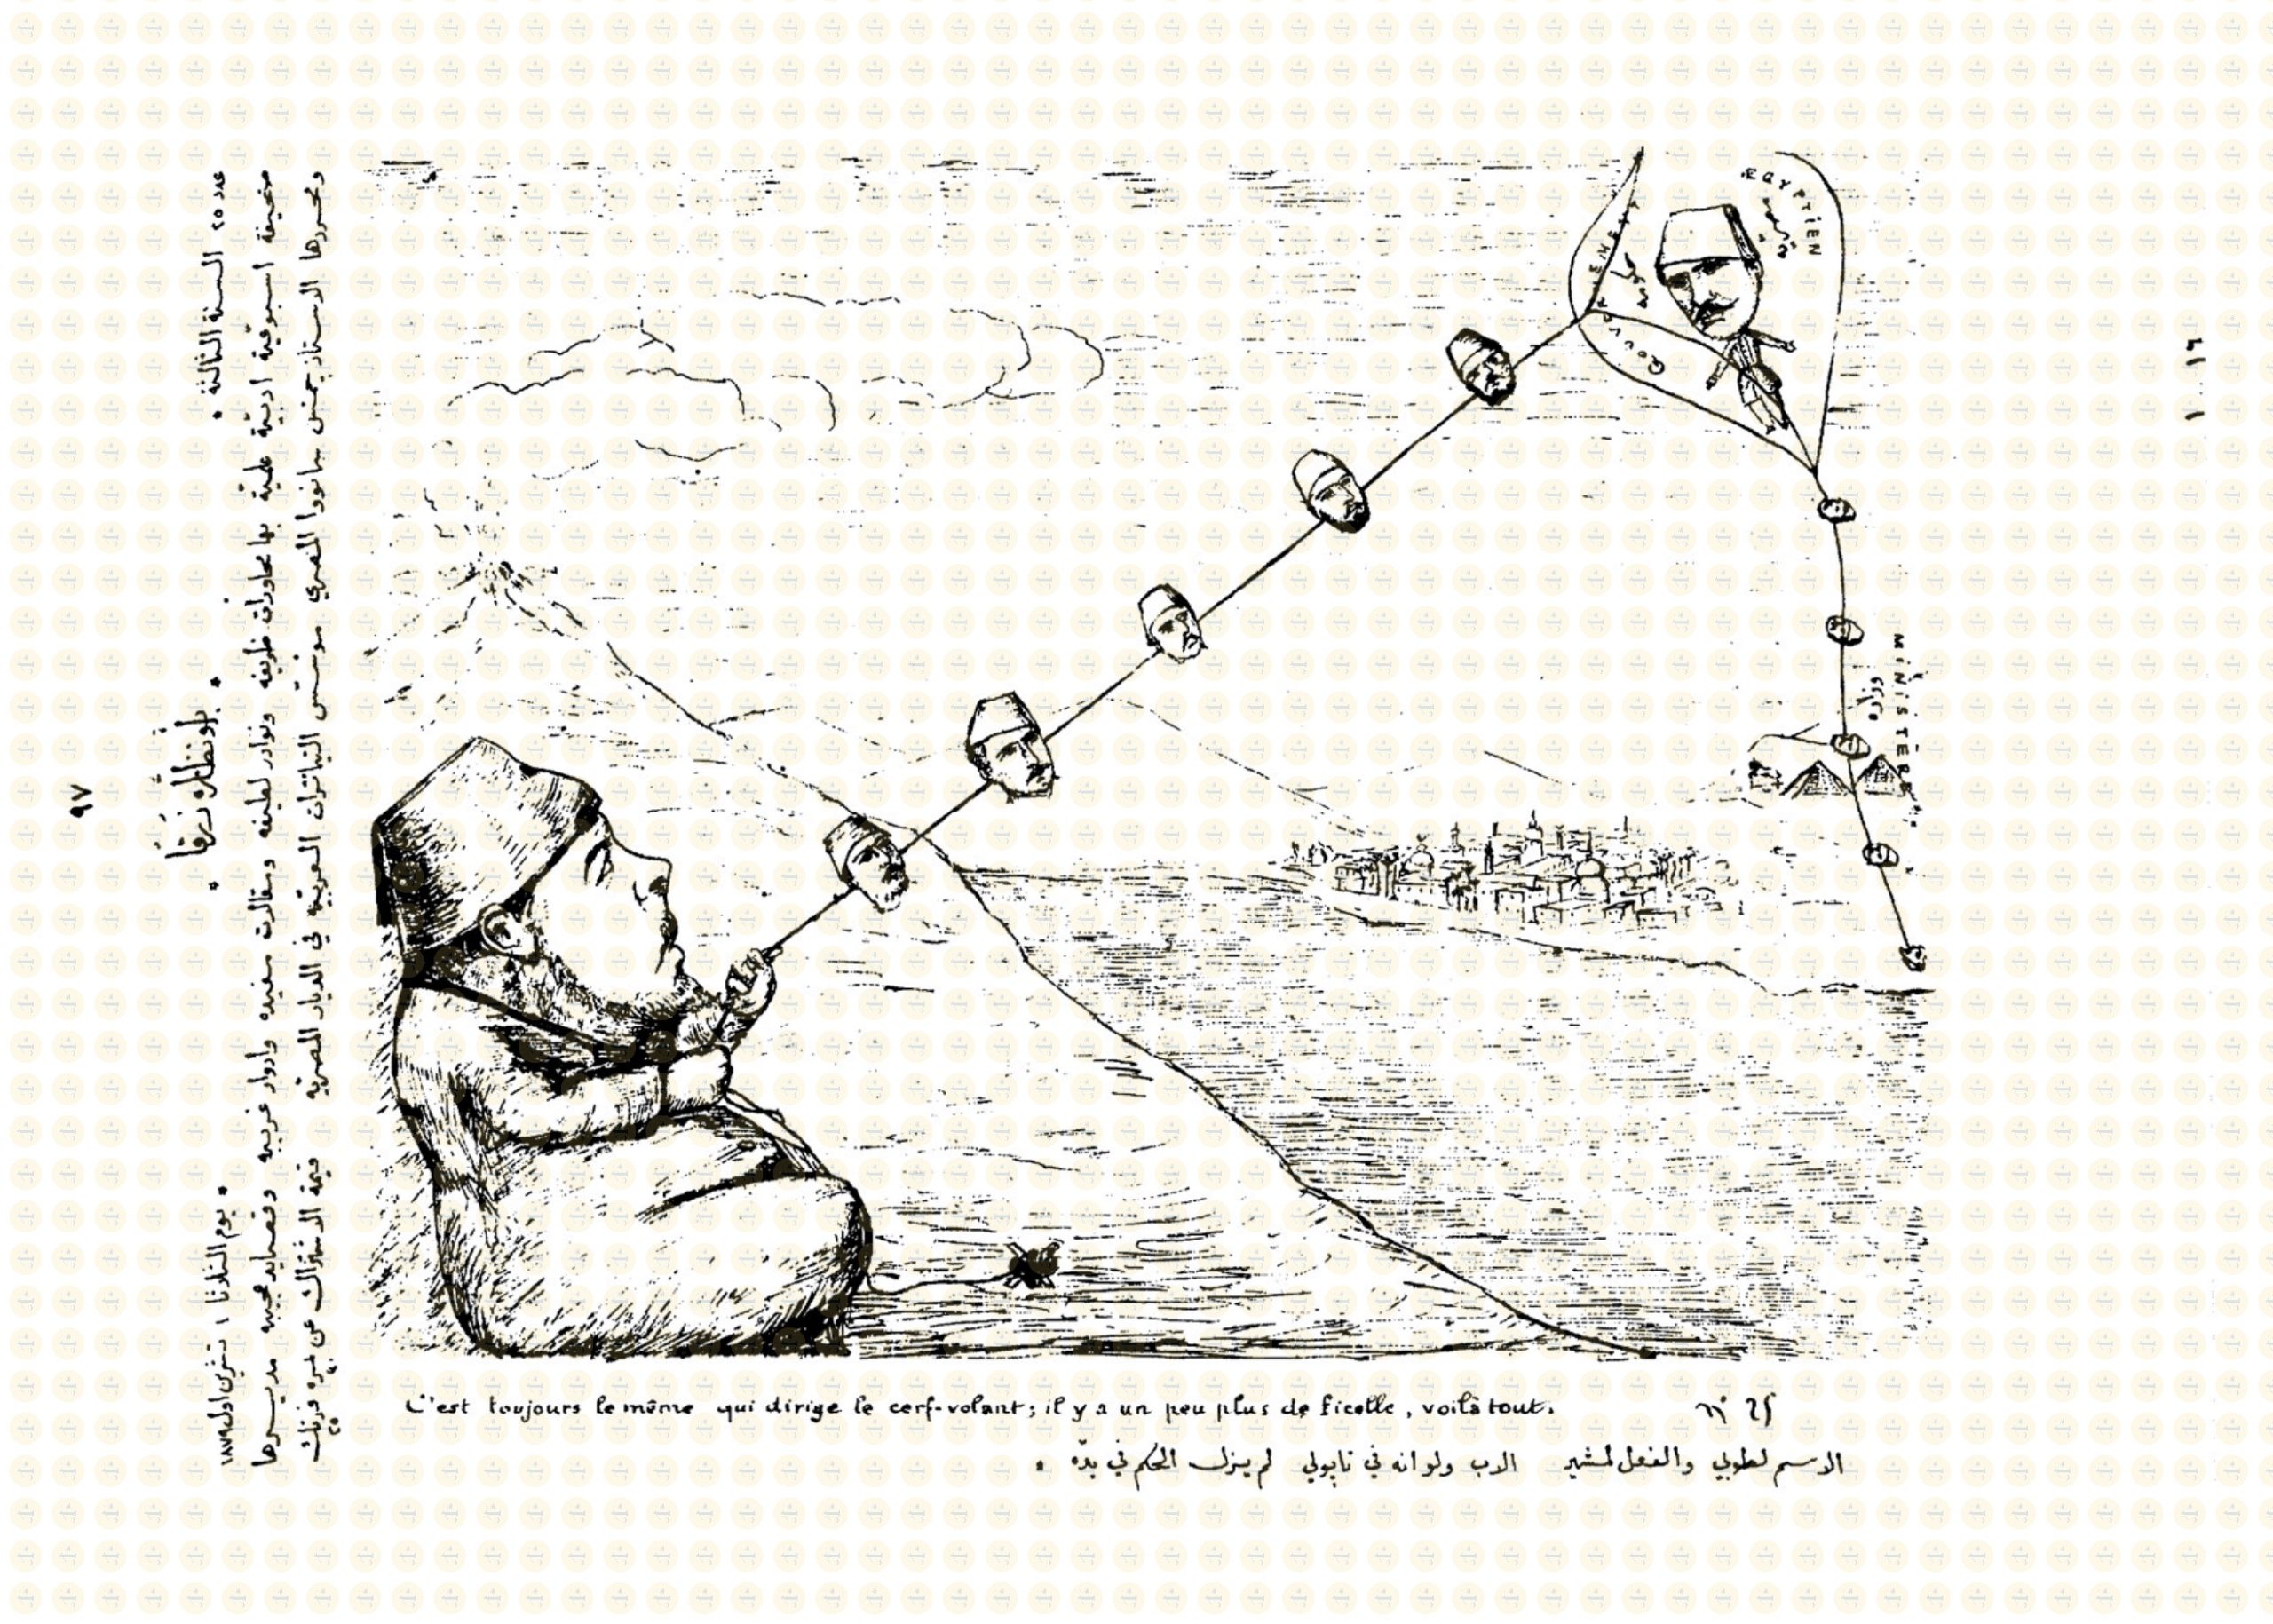 &#8220;ننشرها كاملةً&#8221; رسومات الكاريكاتير التي أغضبت الخديوي إسماعيل وسجنت حامليها